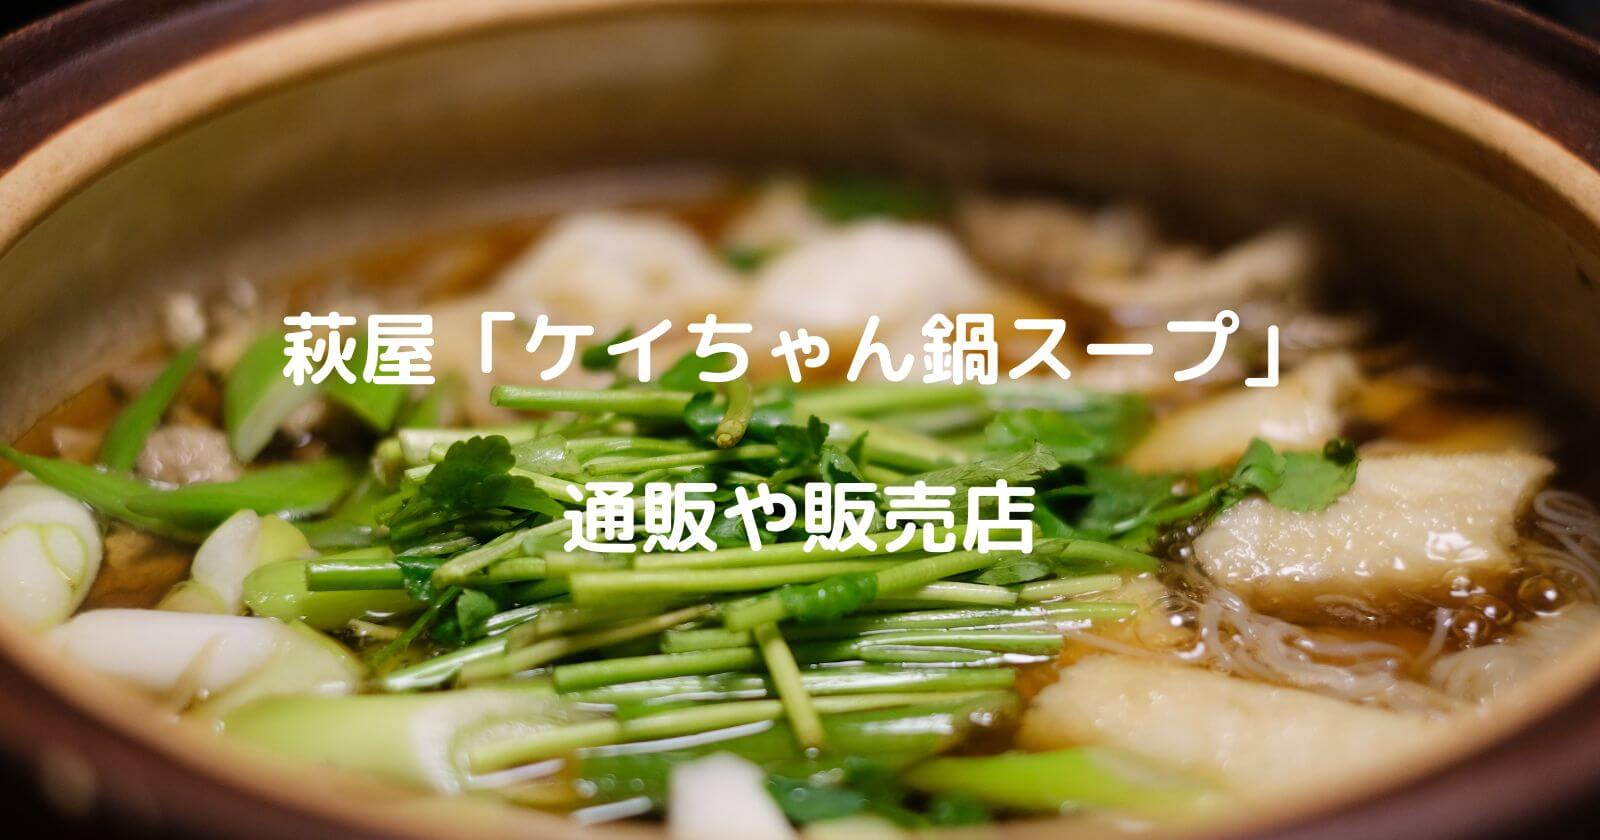 萩屋ケイちゃん鍋スープのお取り寄せ通販や販売店